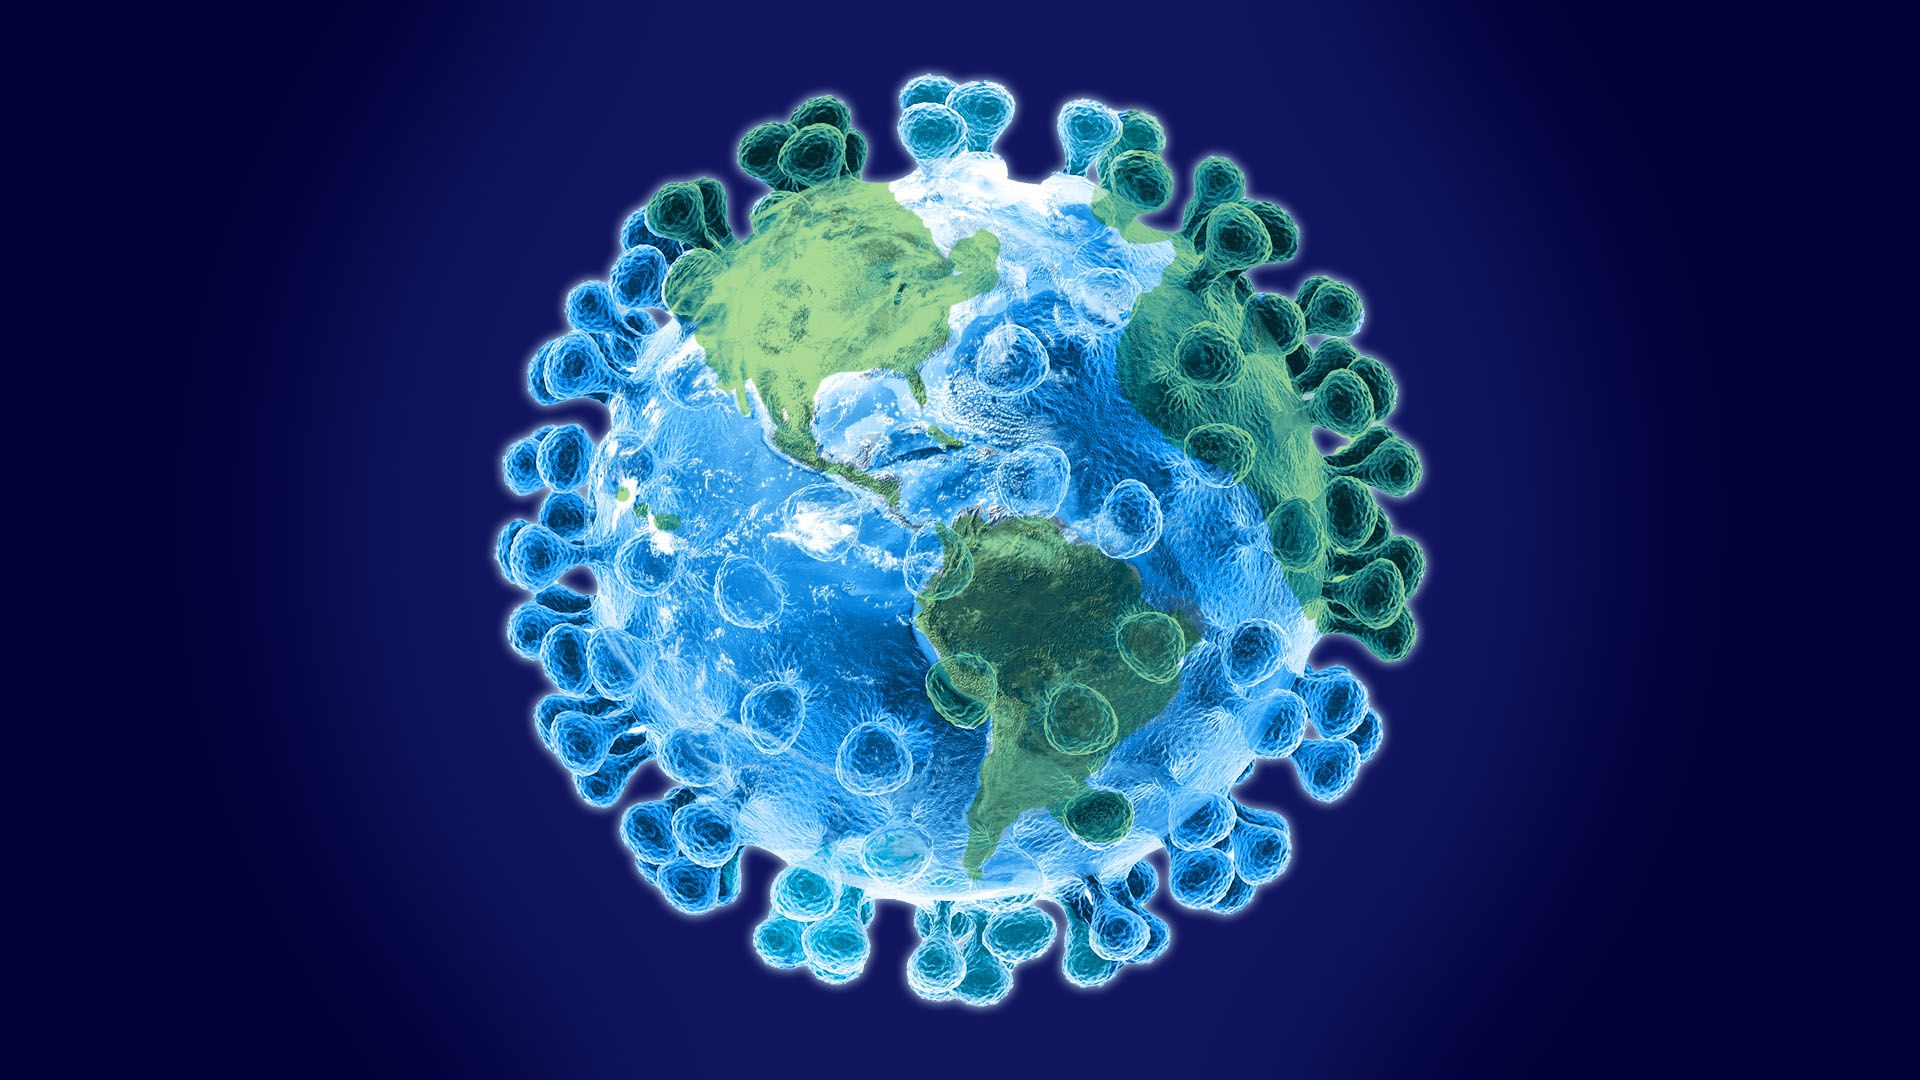 Coronavirus may be "at the brink" of a global pandemic